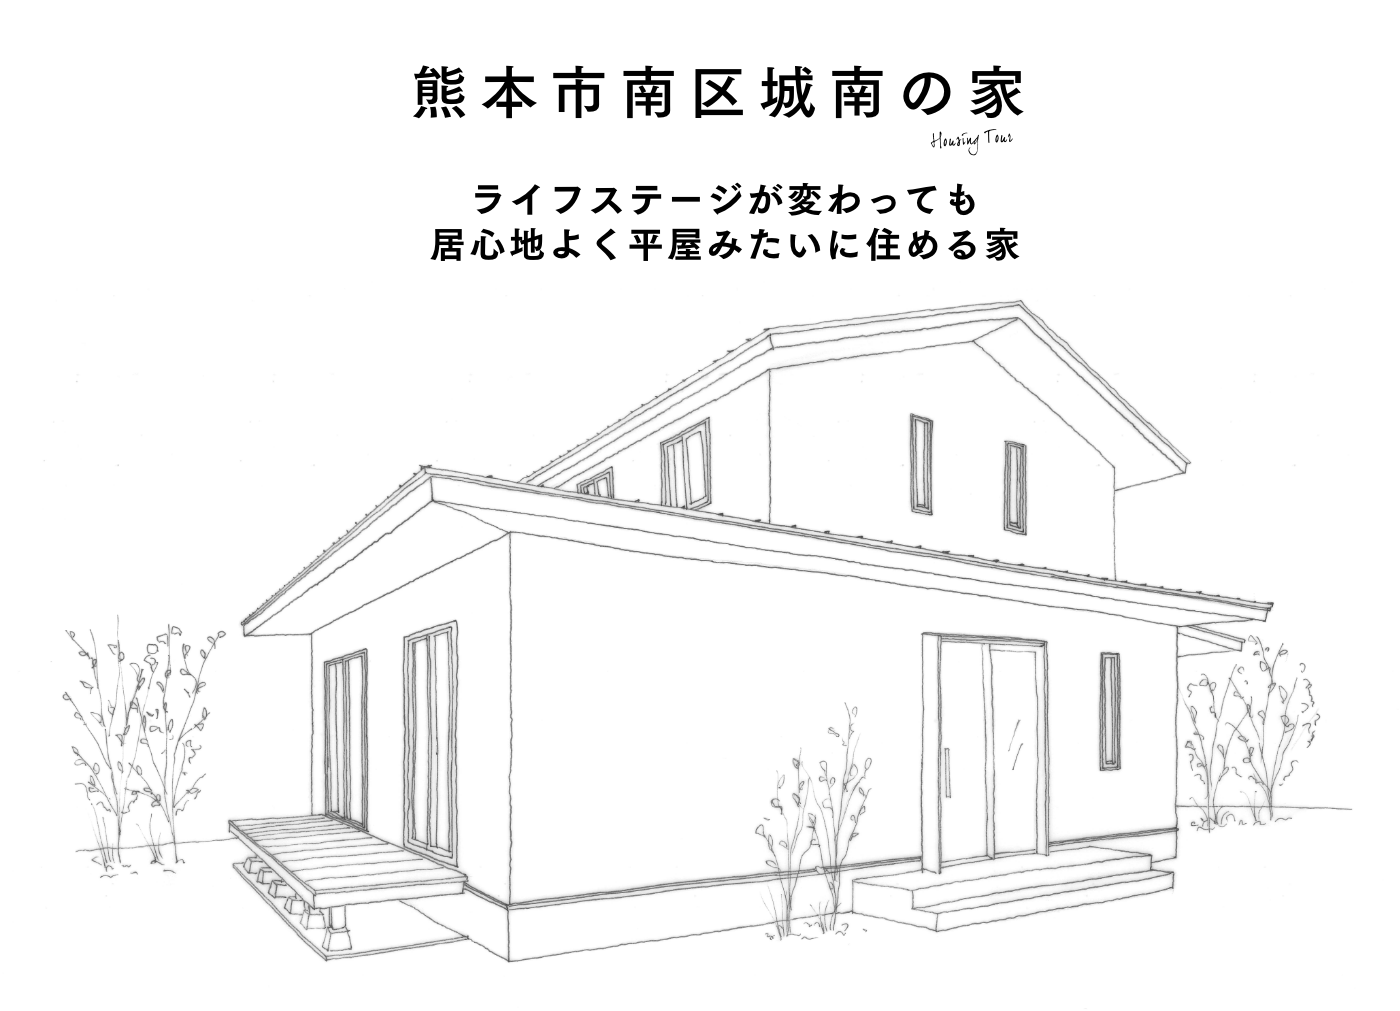 熊本市南区城南の家 ライフステージが変わっても居心地よく平屋みたいに住める家 構造見学会開催